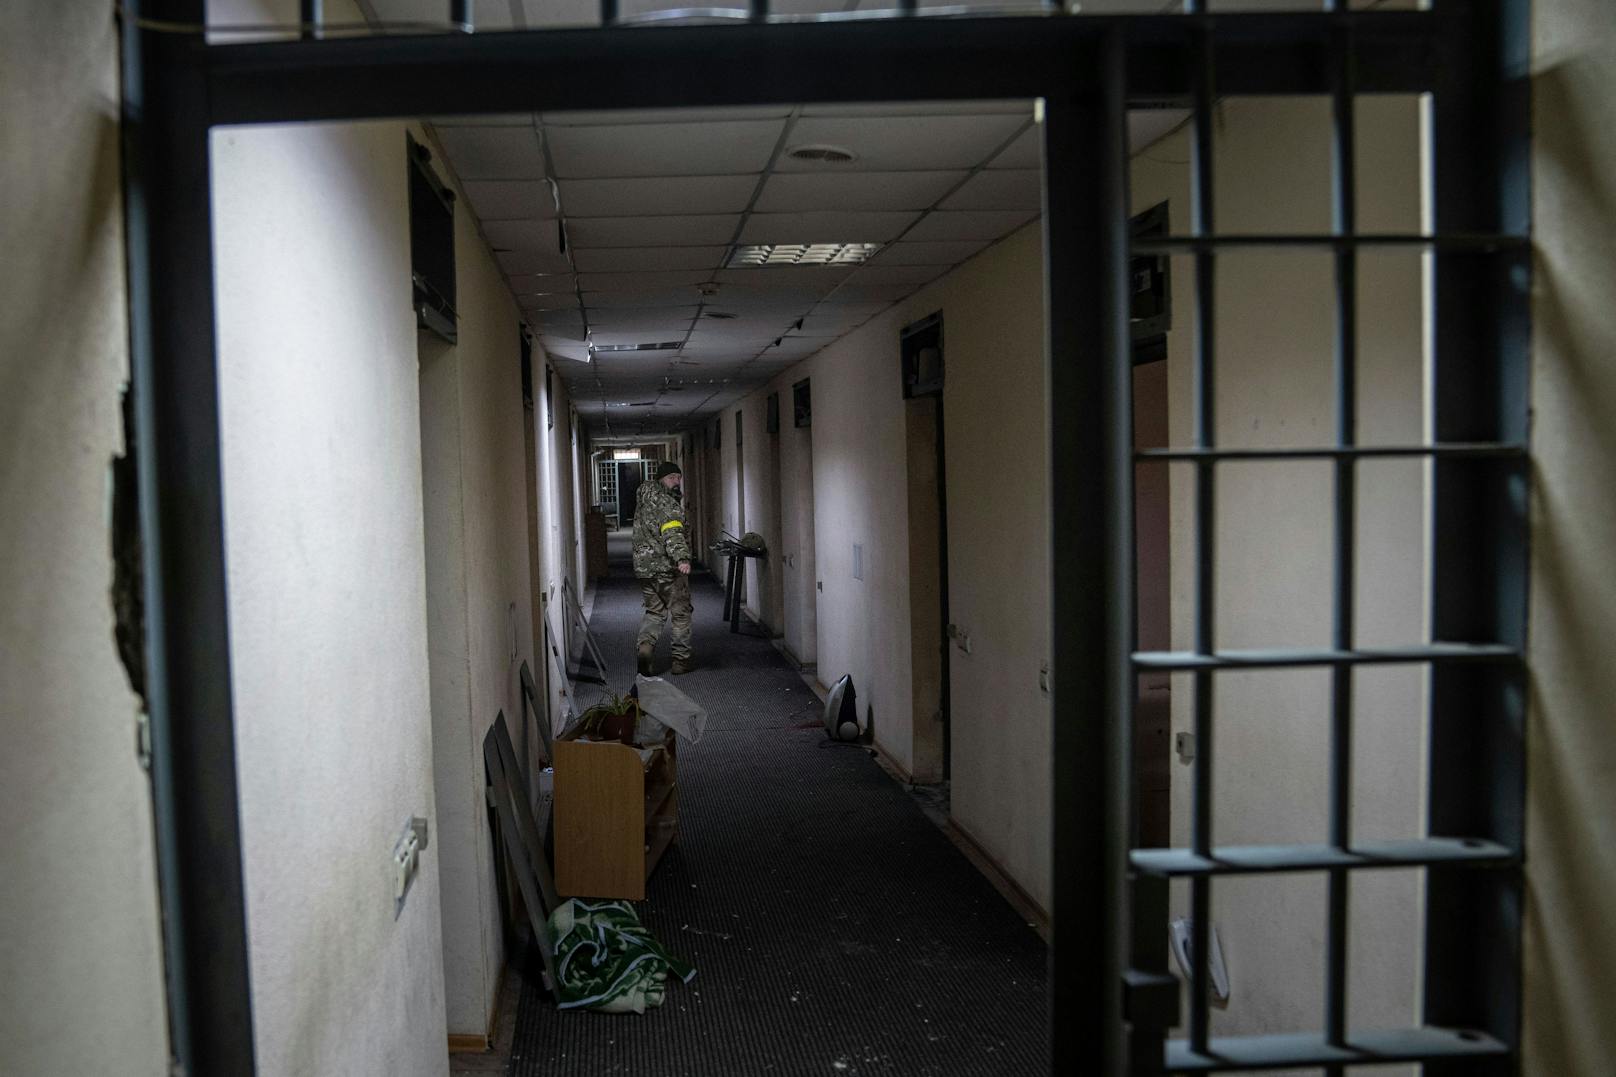 Unter anderem in diesem Gebäude sollen ukrainische Zivilisten gefoltert worden sein.